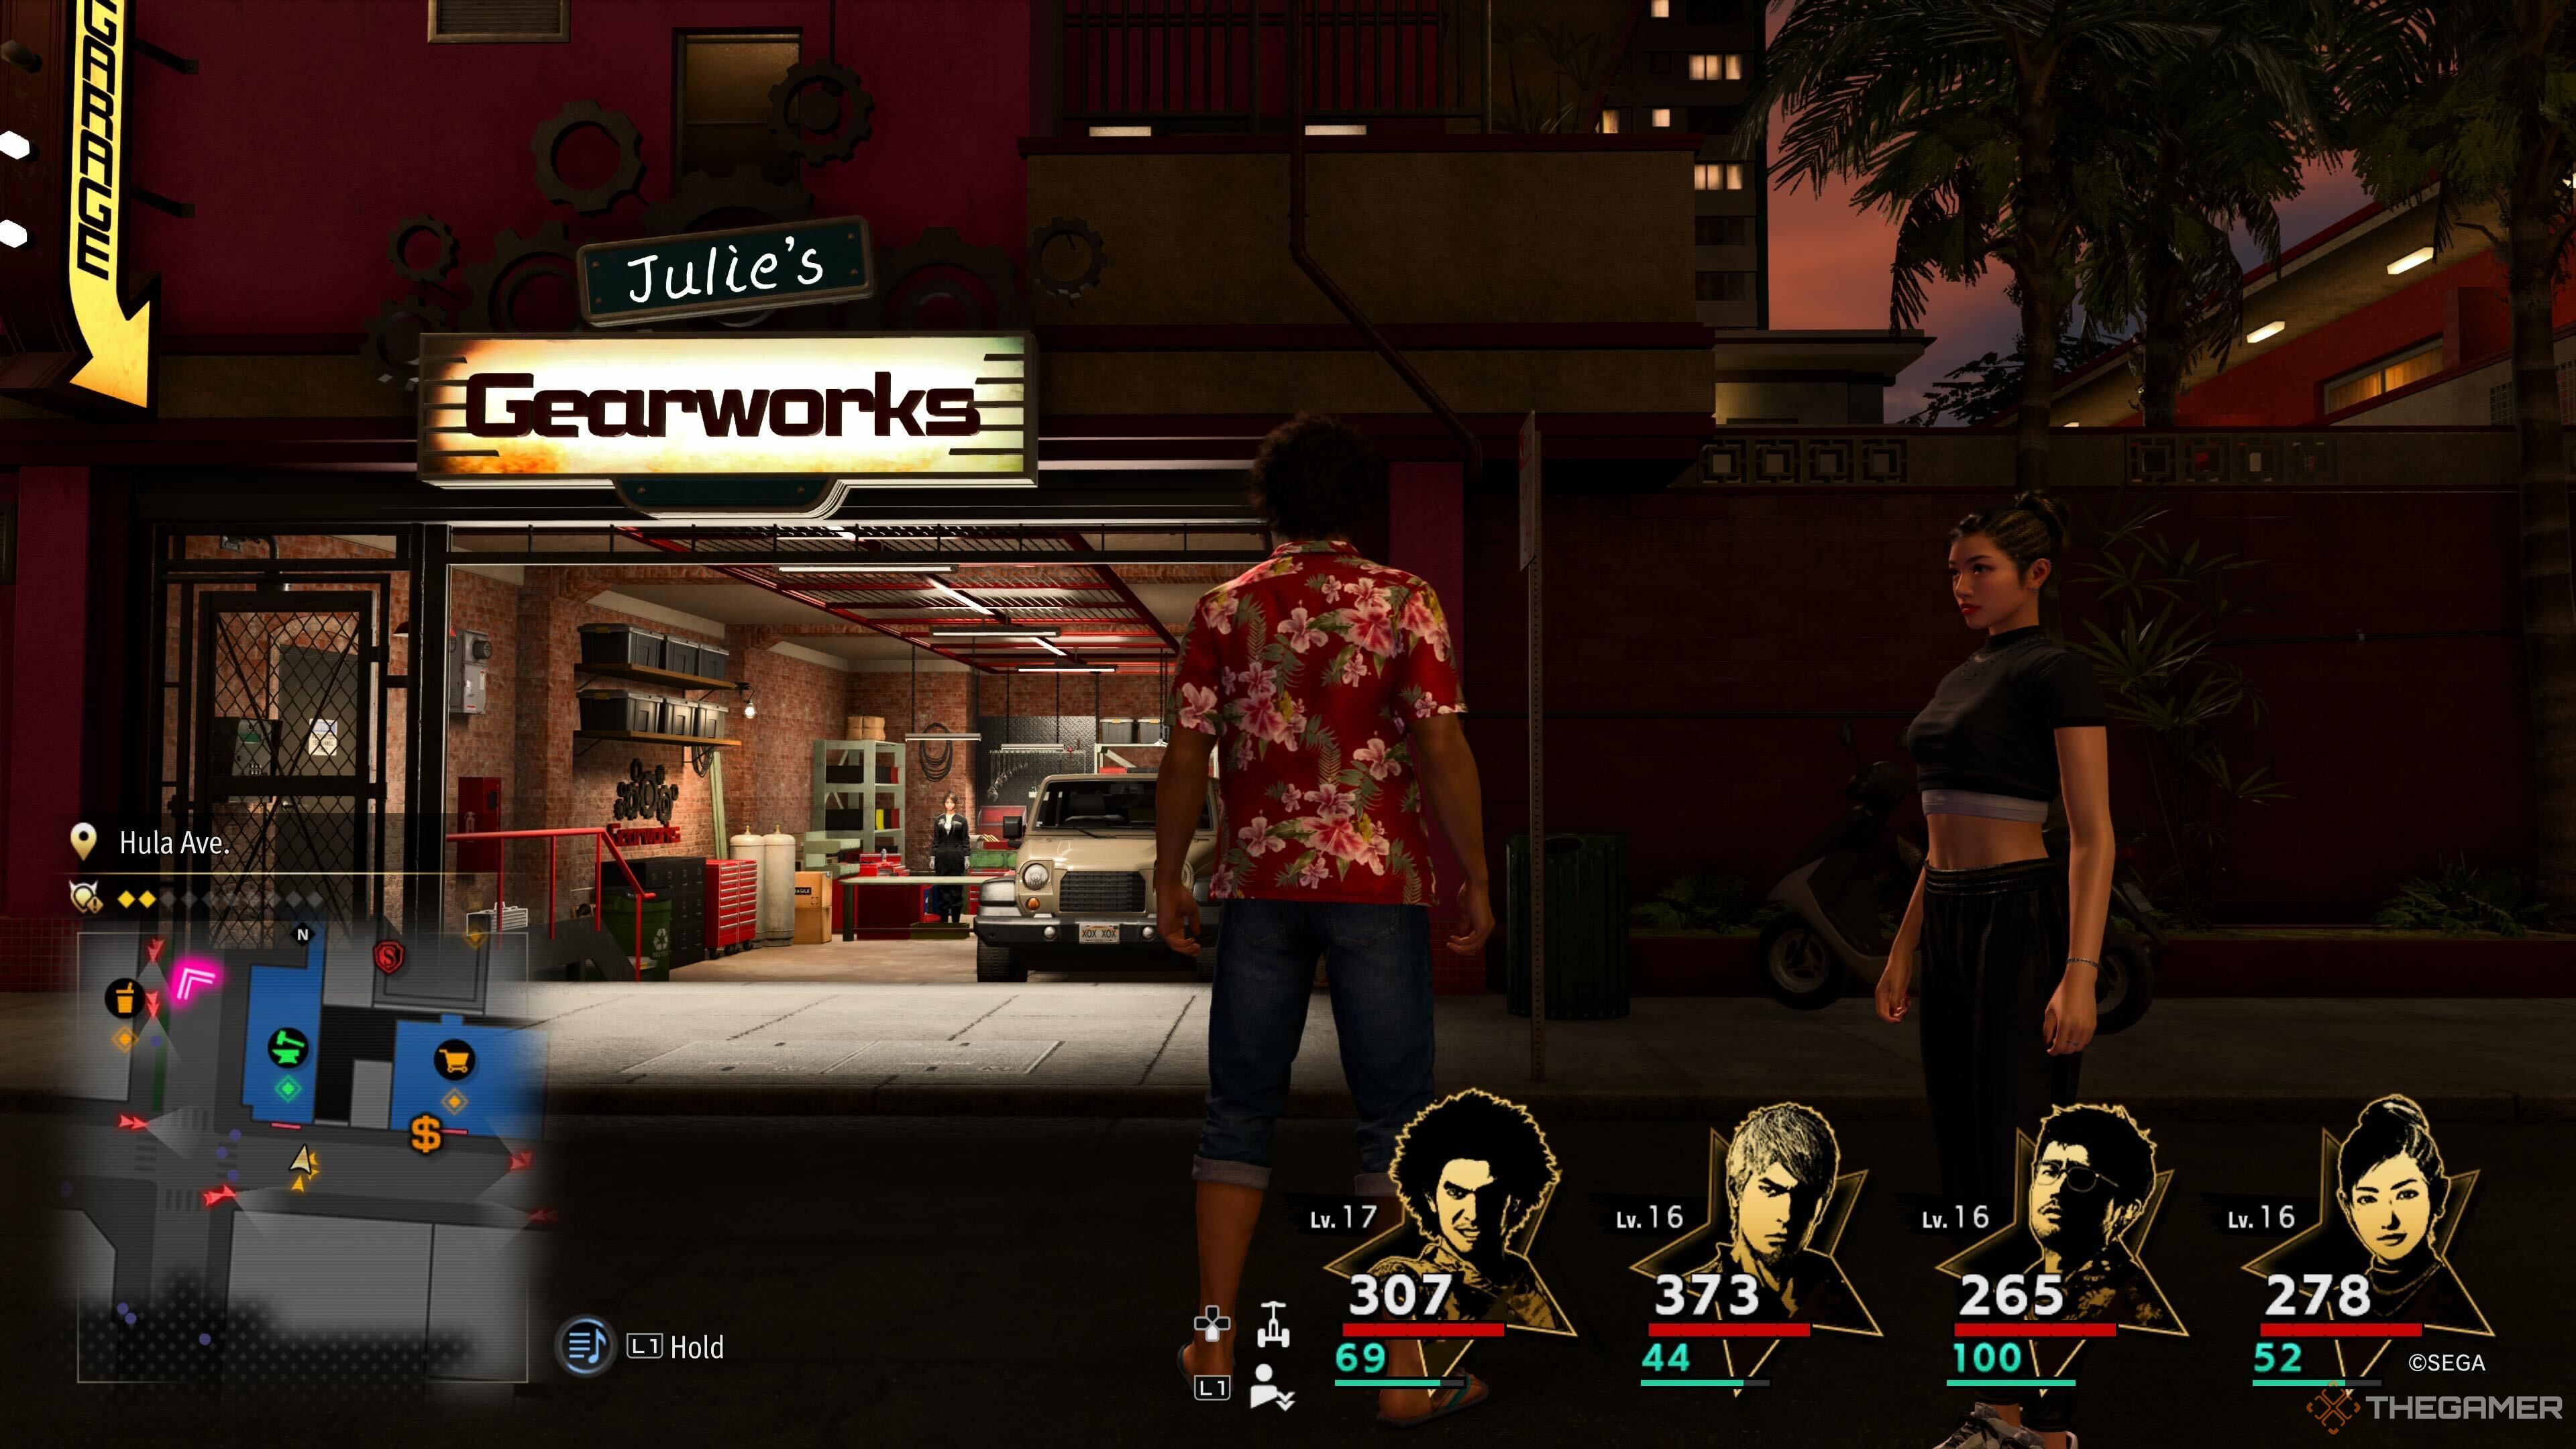 Ein Screenshot aus Like a Dragon: Infinite Wealth, der Ichiban und Chitose vor Julies Gearworks zeigt, mit einem Lastwagen in der Garage und Julie, die hinter einem klappbaren Tisch steht. 